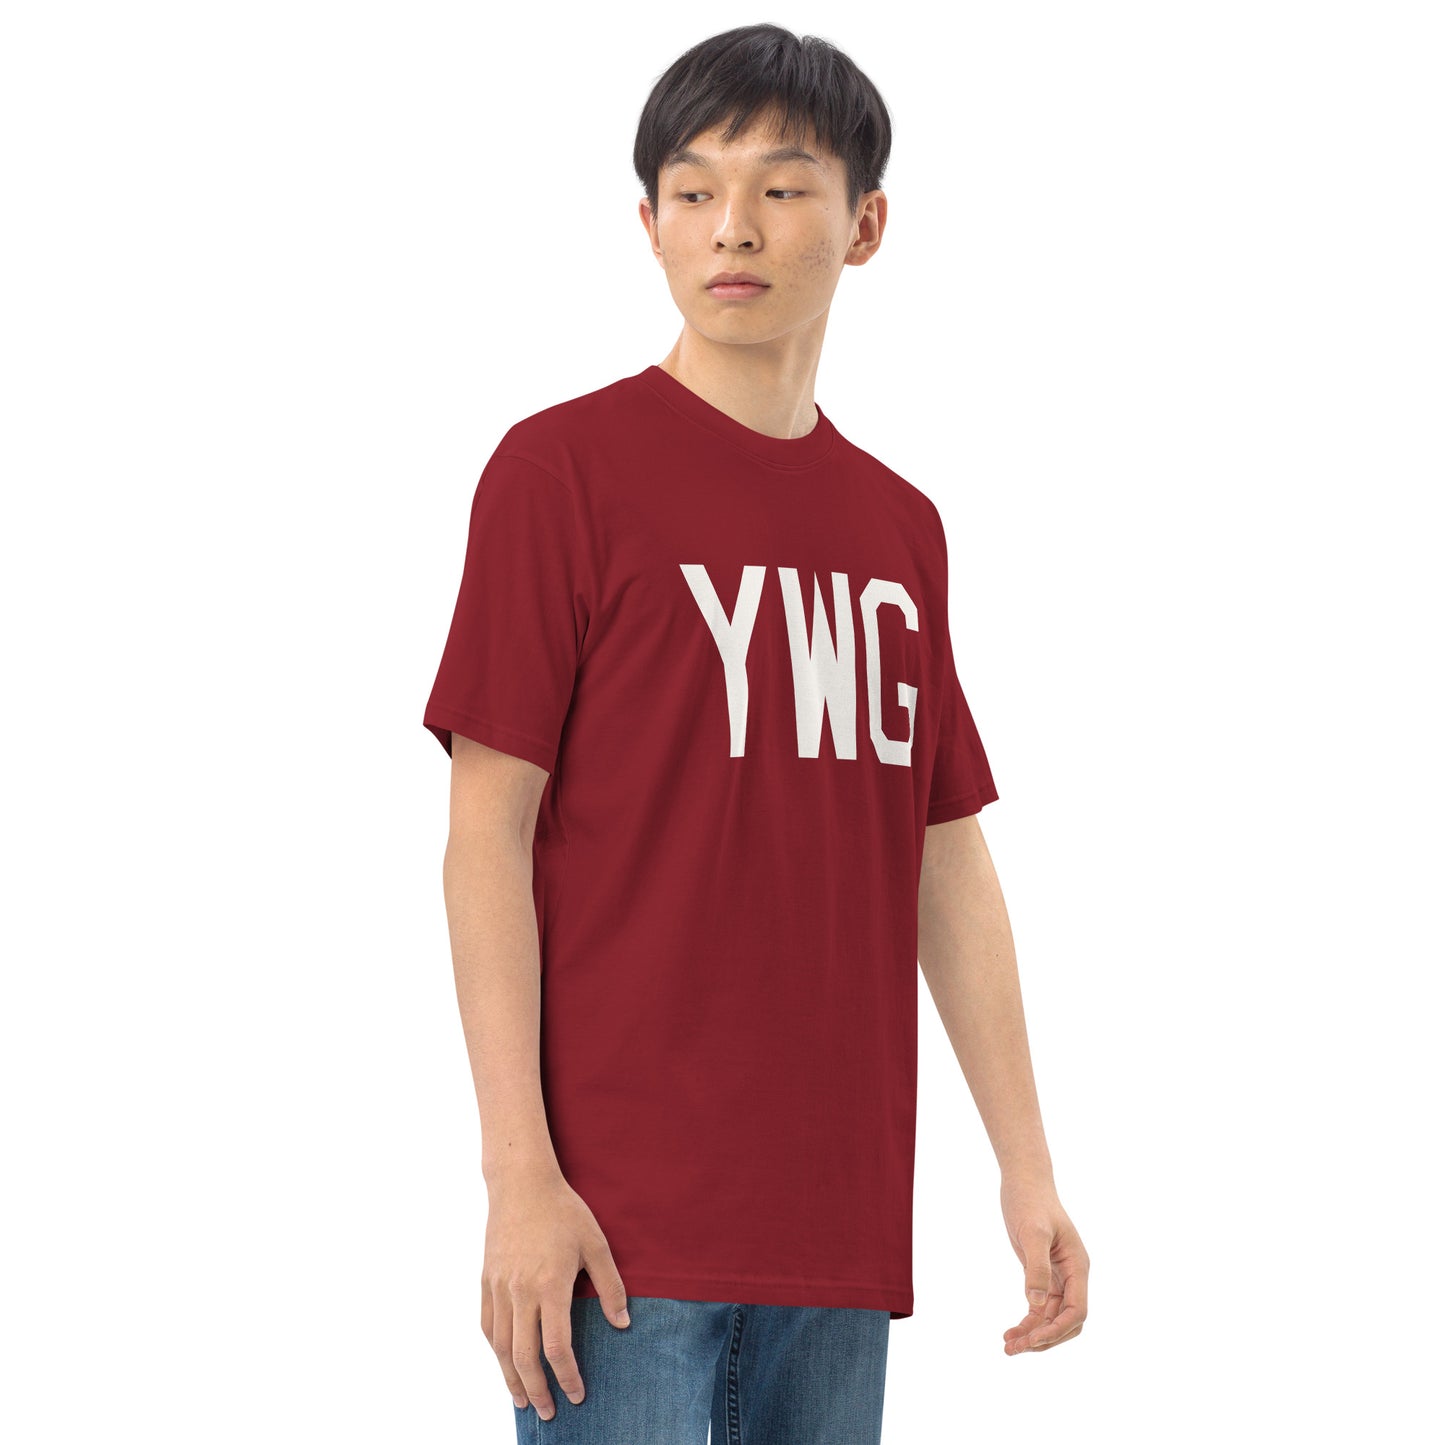 YWG Winnipeg Manitoba Men's Premium Heavyweight T-Shirt